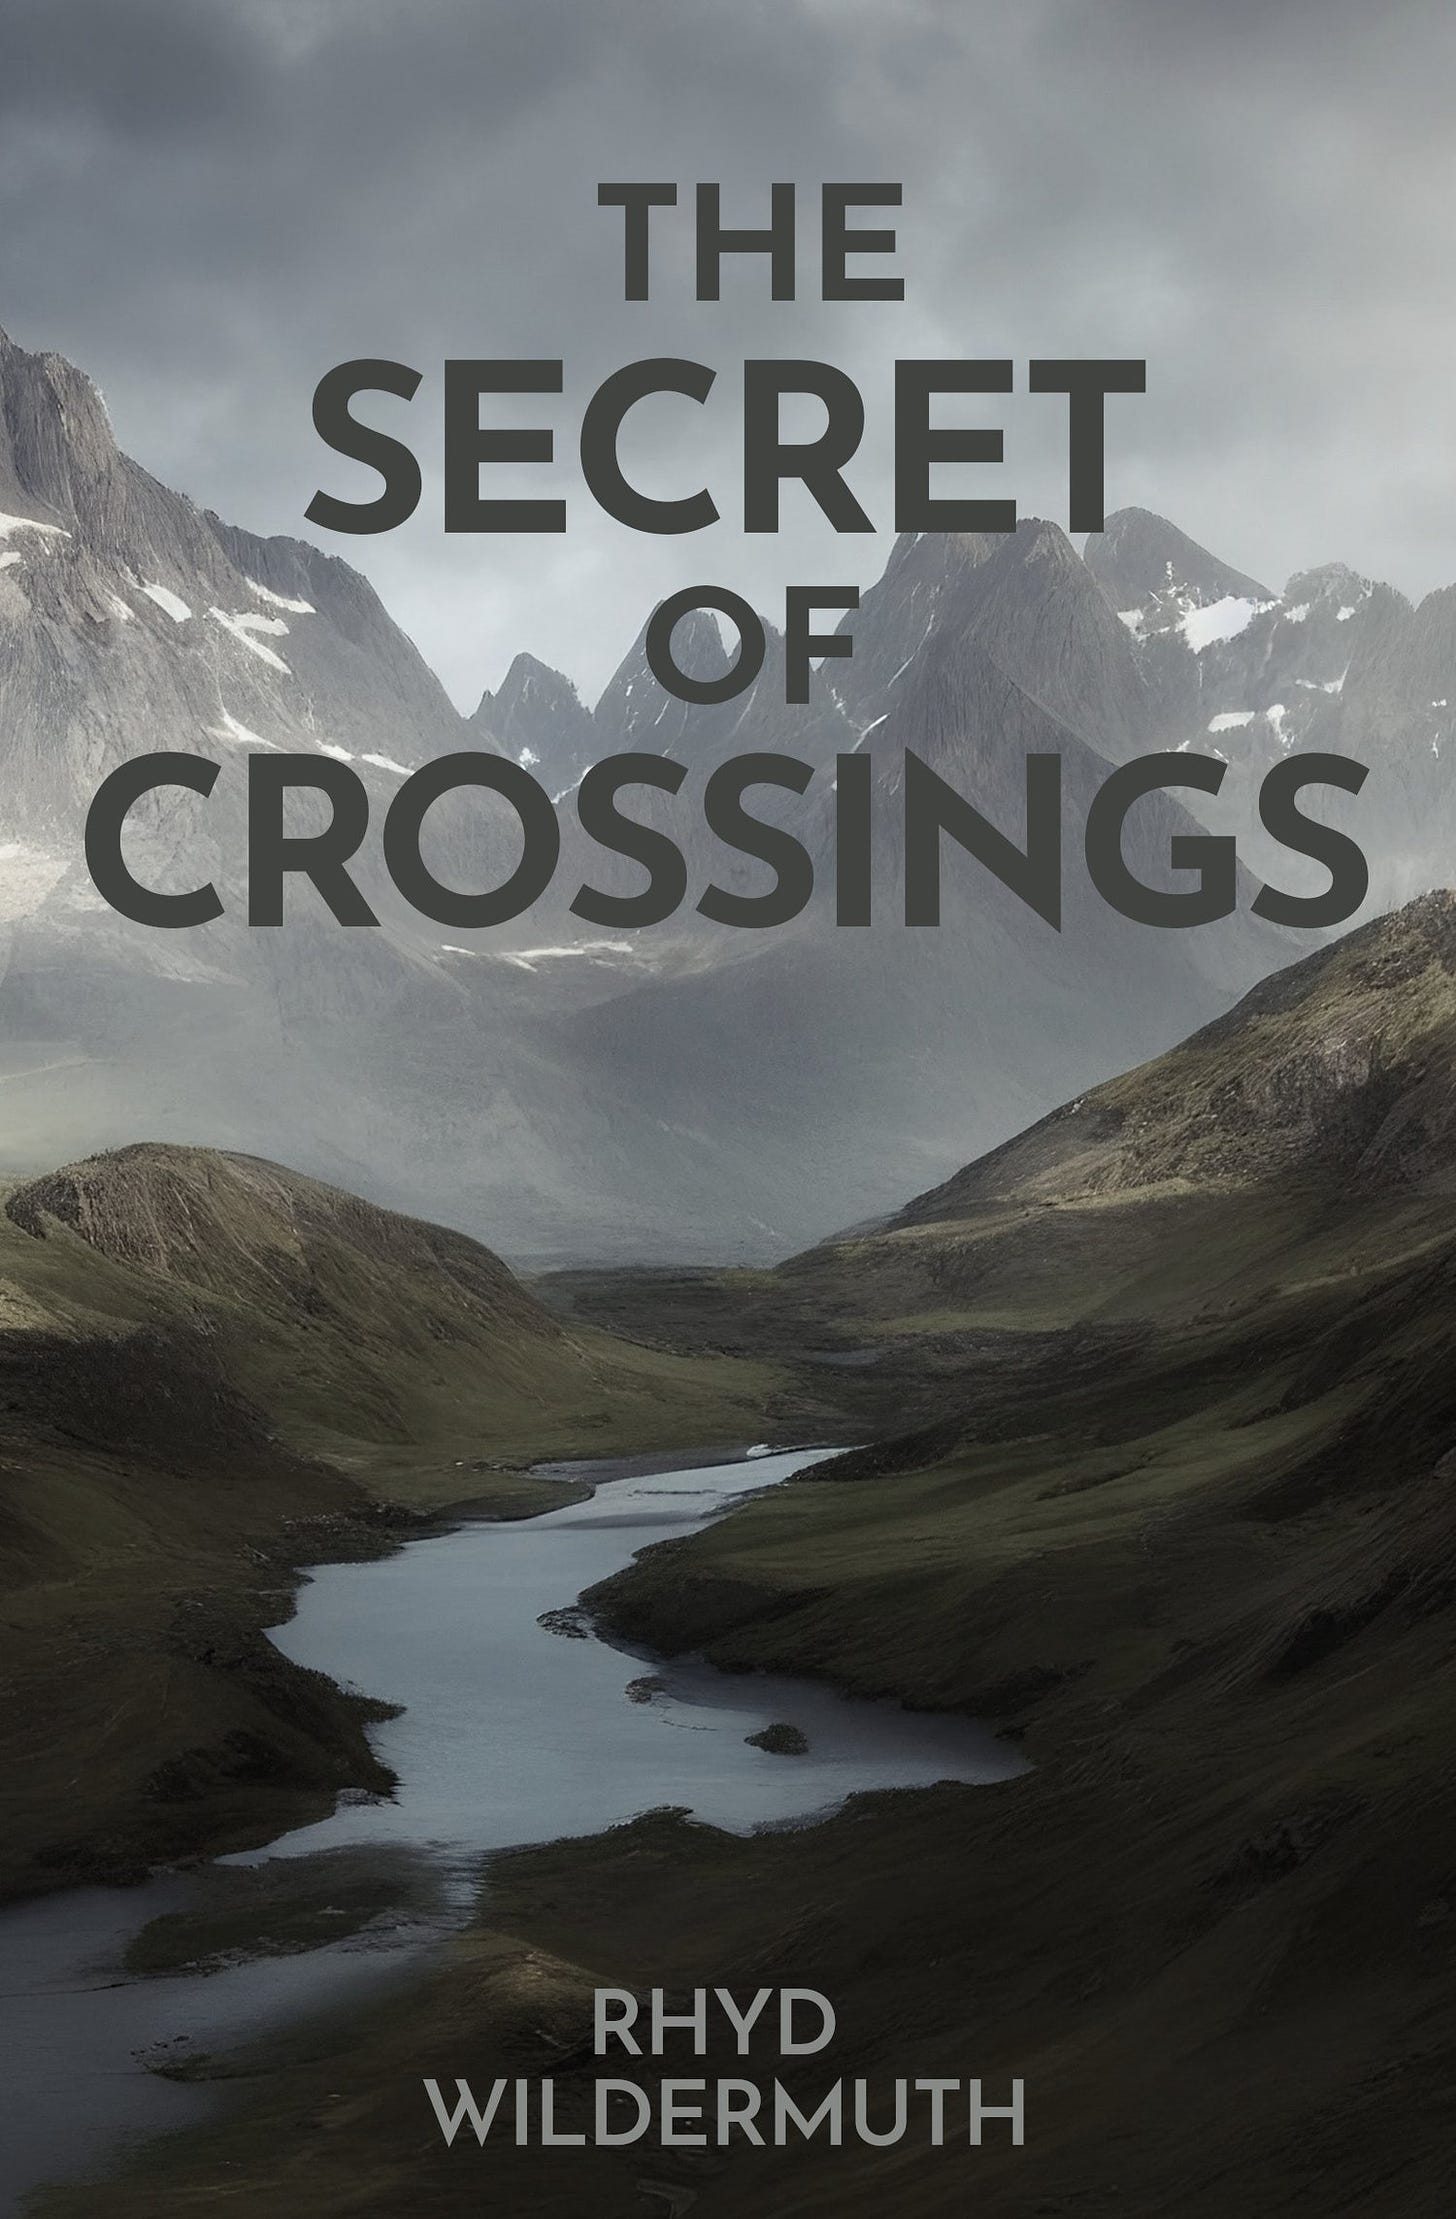 The Secret of Crossings by Rhyd Wildermuth (print edition)